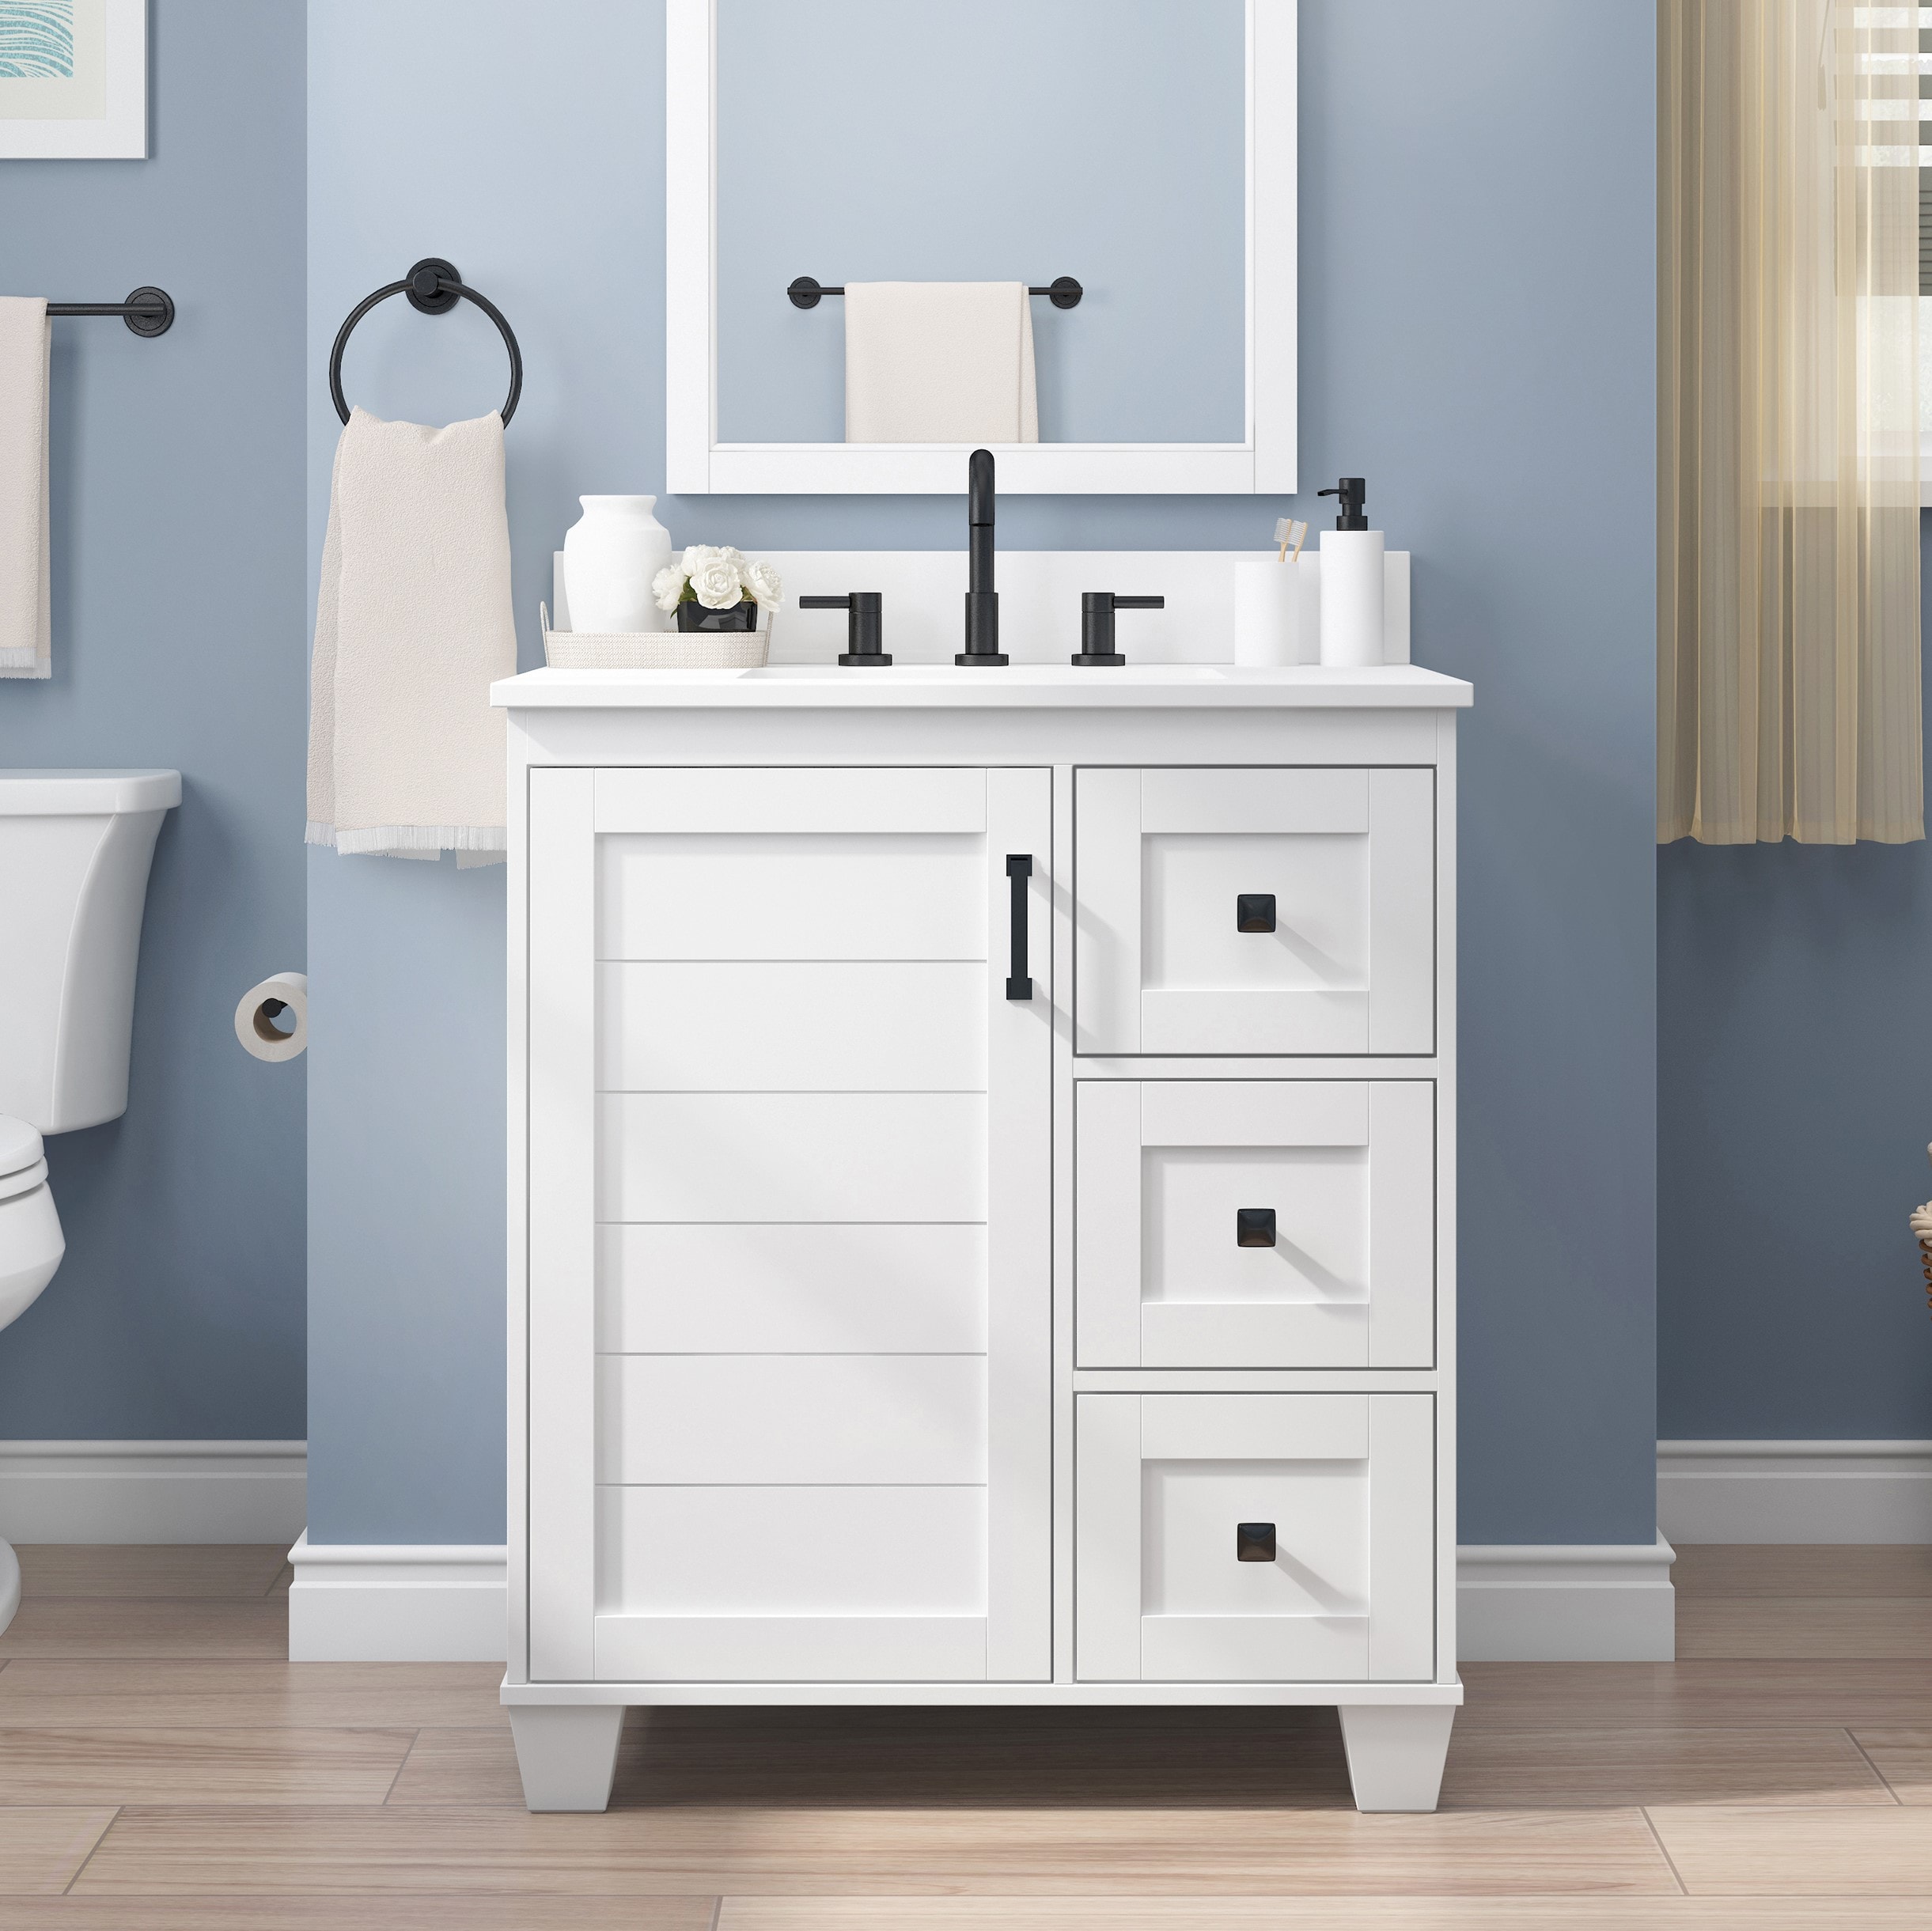 allen + roth rigsby 30-in white undermount single sink bathroom